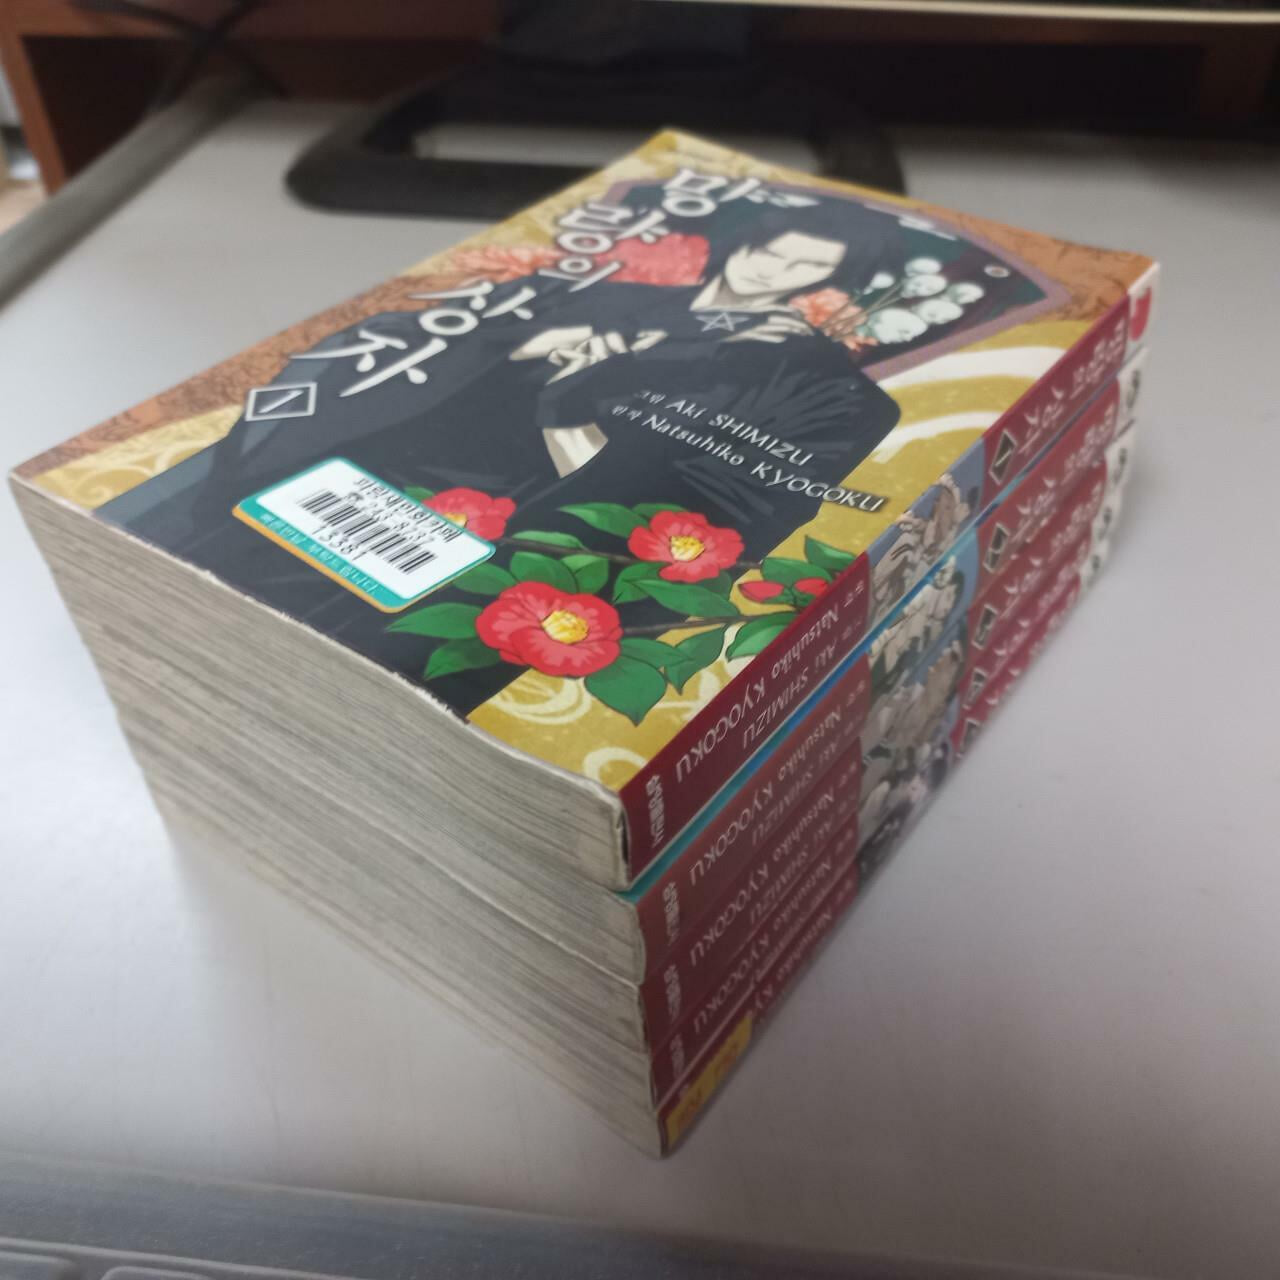 망량의 상자1-5완결 (중고특가 12000원/ 실사진 첨부) 코믹갤러리